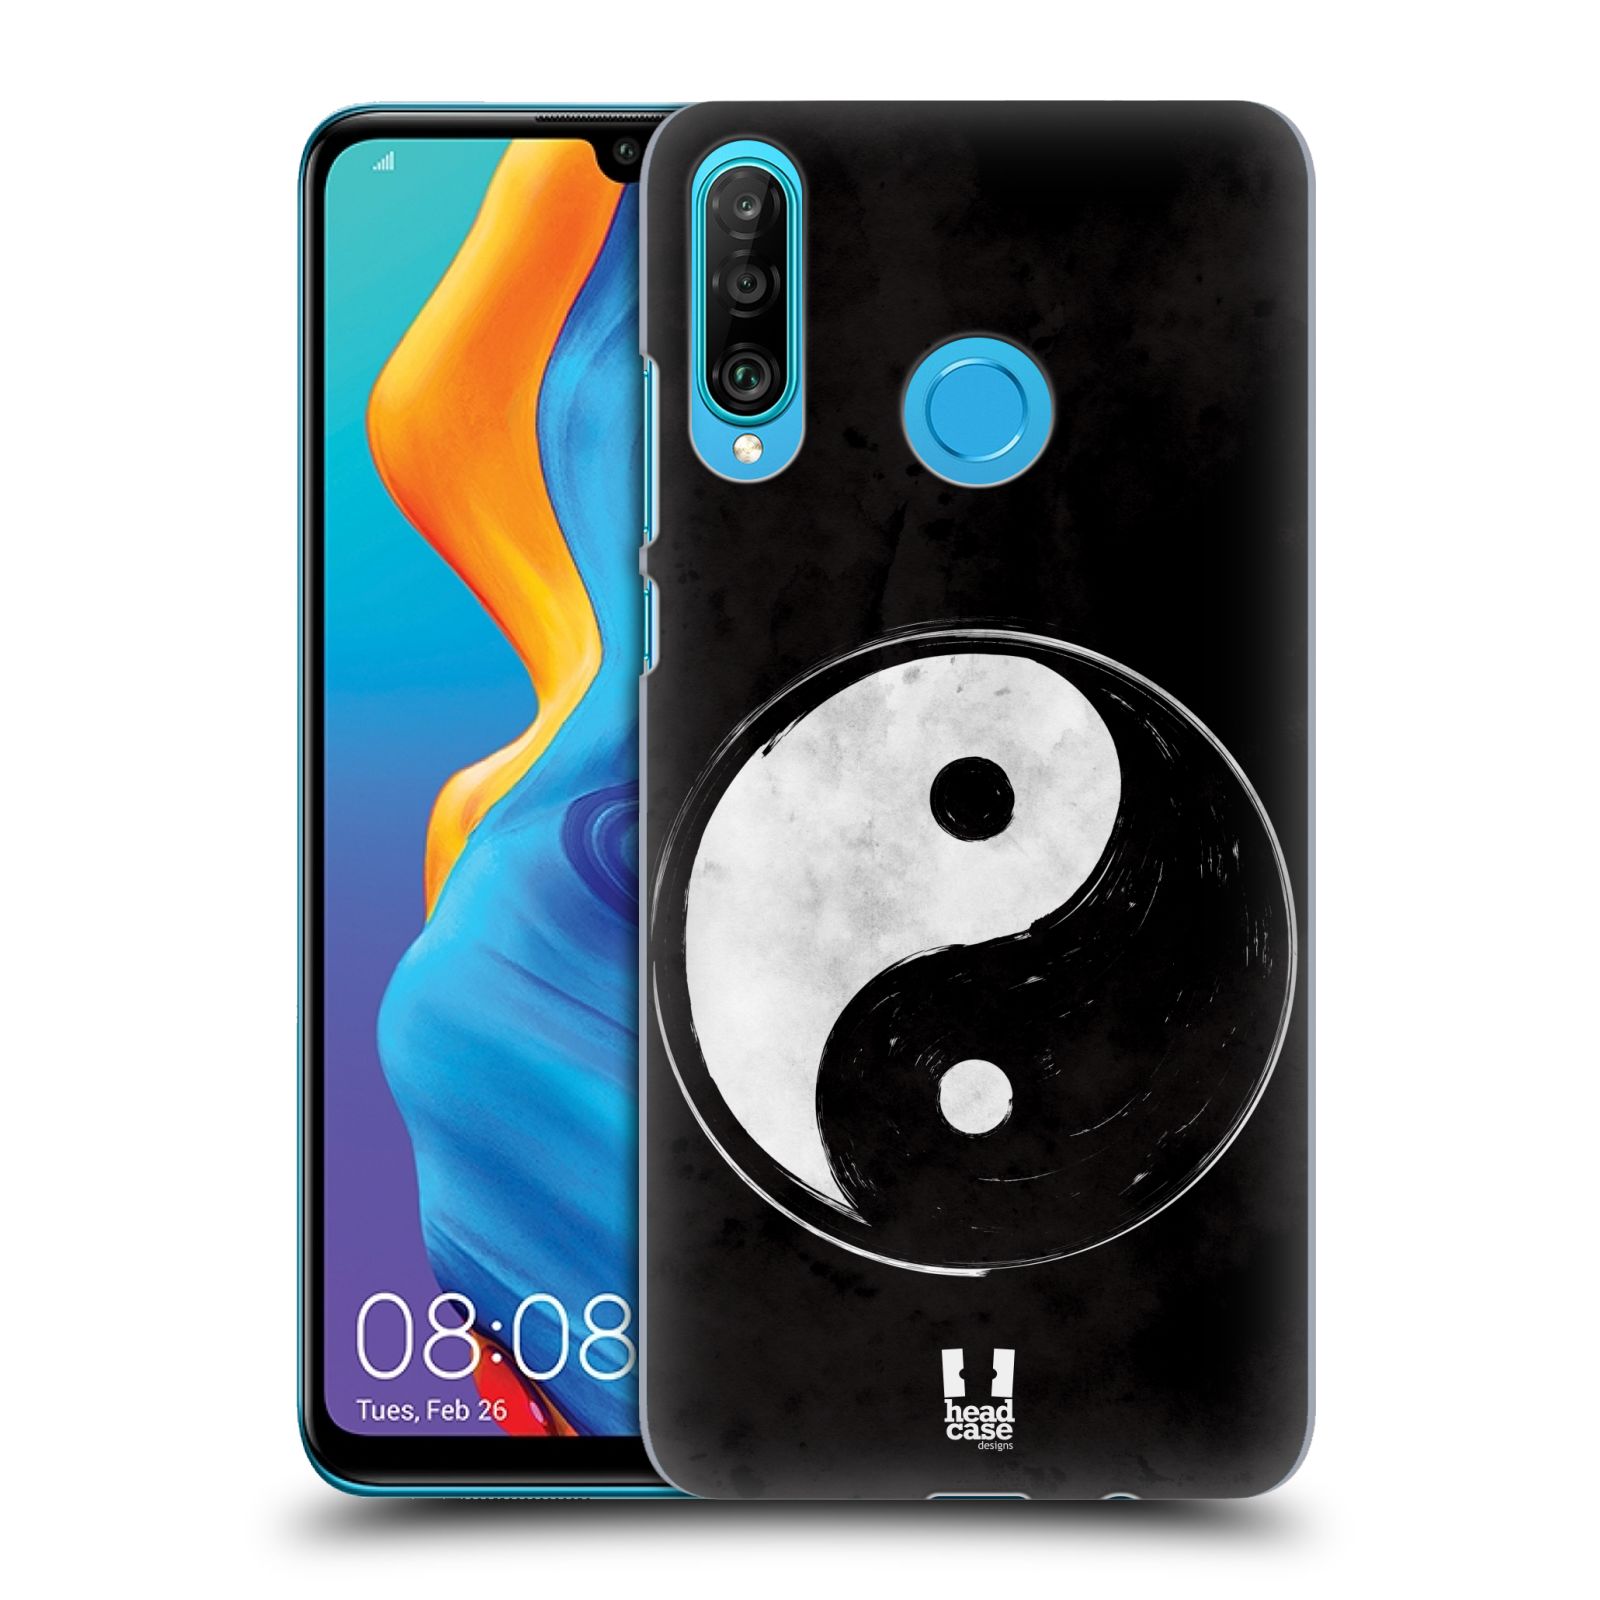 Plastové pouzdro na mobil Huawei P30 Lite - Head Case - Yin a Yang BW (Plastový kryt, pouzdro, obal na mobilní telefon Huawei P30 Lite Dual Sim (MAR-L01A, MAR-L21A, MAR-LX1A) s motivem Yin a Yang BW)